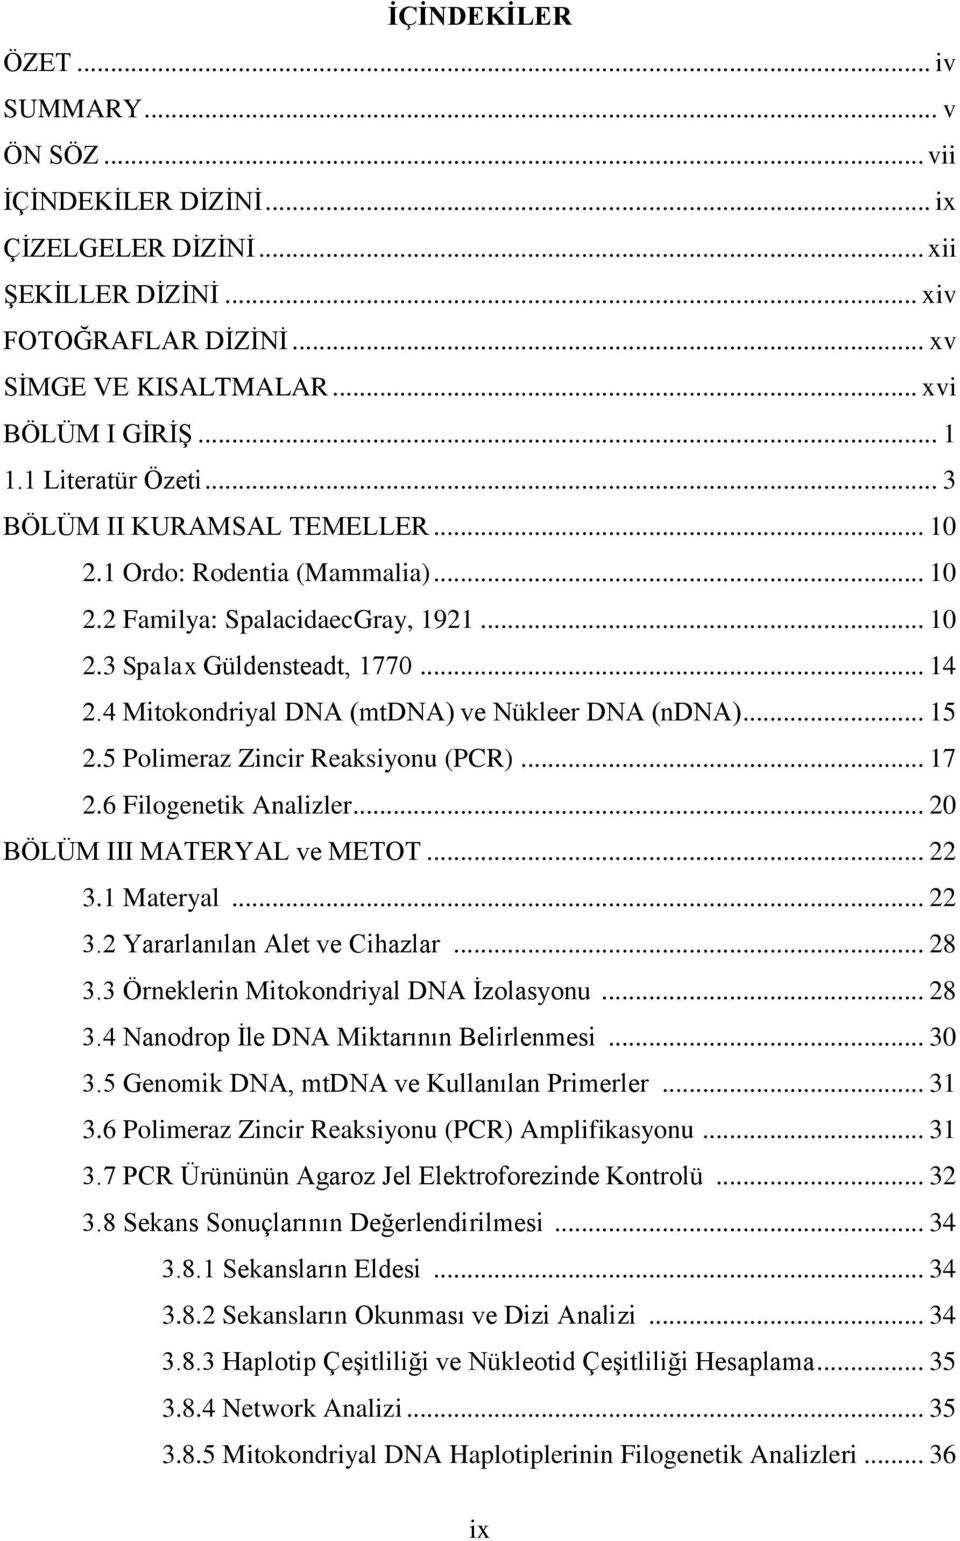 4 Mitokondriyal DNA (mtdna) ve Nükleer DNA (ndna)... 15 2.5 Polimeraz Zincir Reaksiyonu (PCR)... 17 2.6 Filogenetik Analizler... 20 BÖLÜM III MATERYAL ve METOT... 22 3.1 Materyal... 22 3.2 Yararlanılan Alet ve Cihazlar.